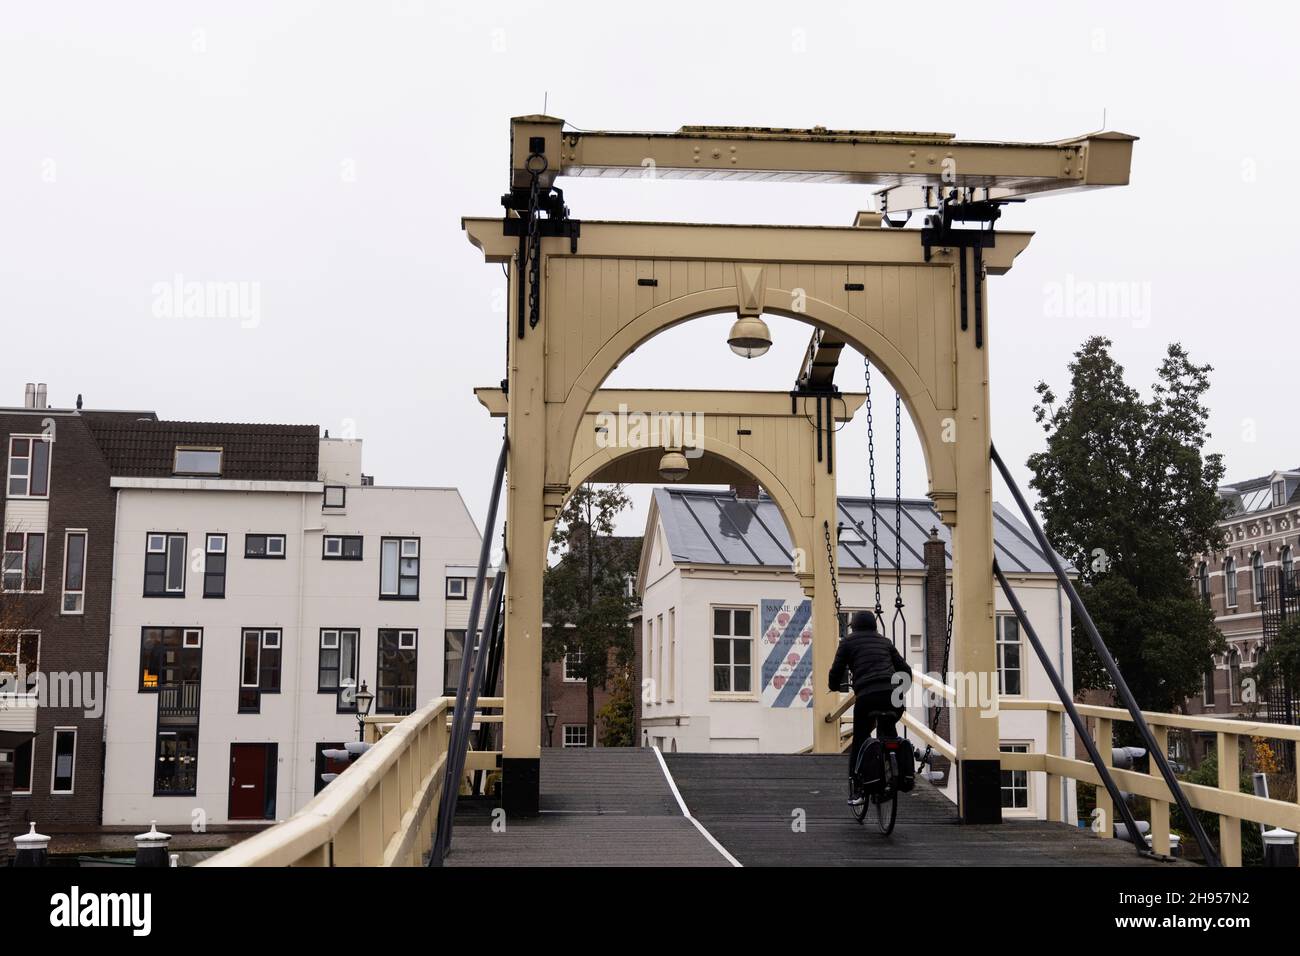 Un ciclista cruza Rembrandtbrug (puente de Rembrandt), un puente levadizo sobre las aguas del río Rin en Leiden, Holanda. Foto de stock